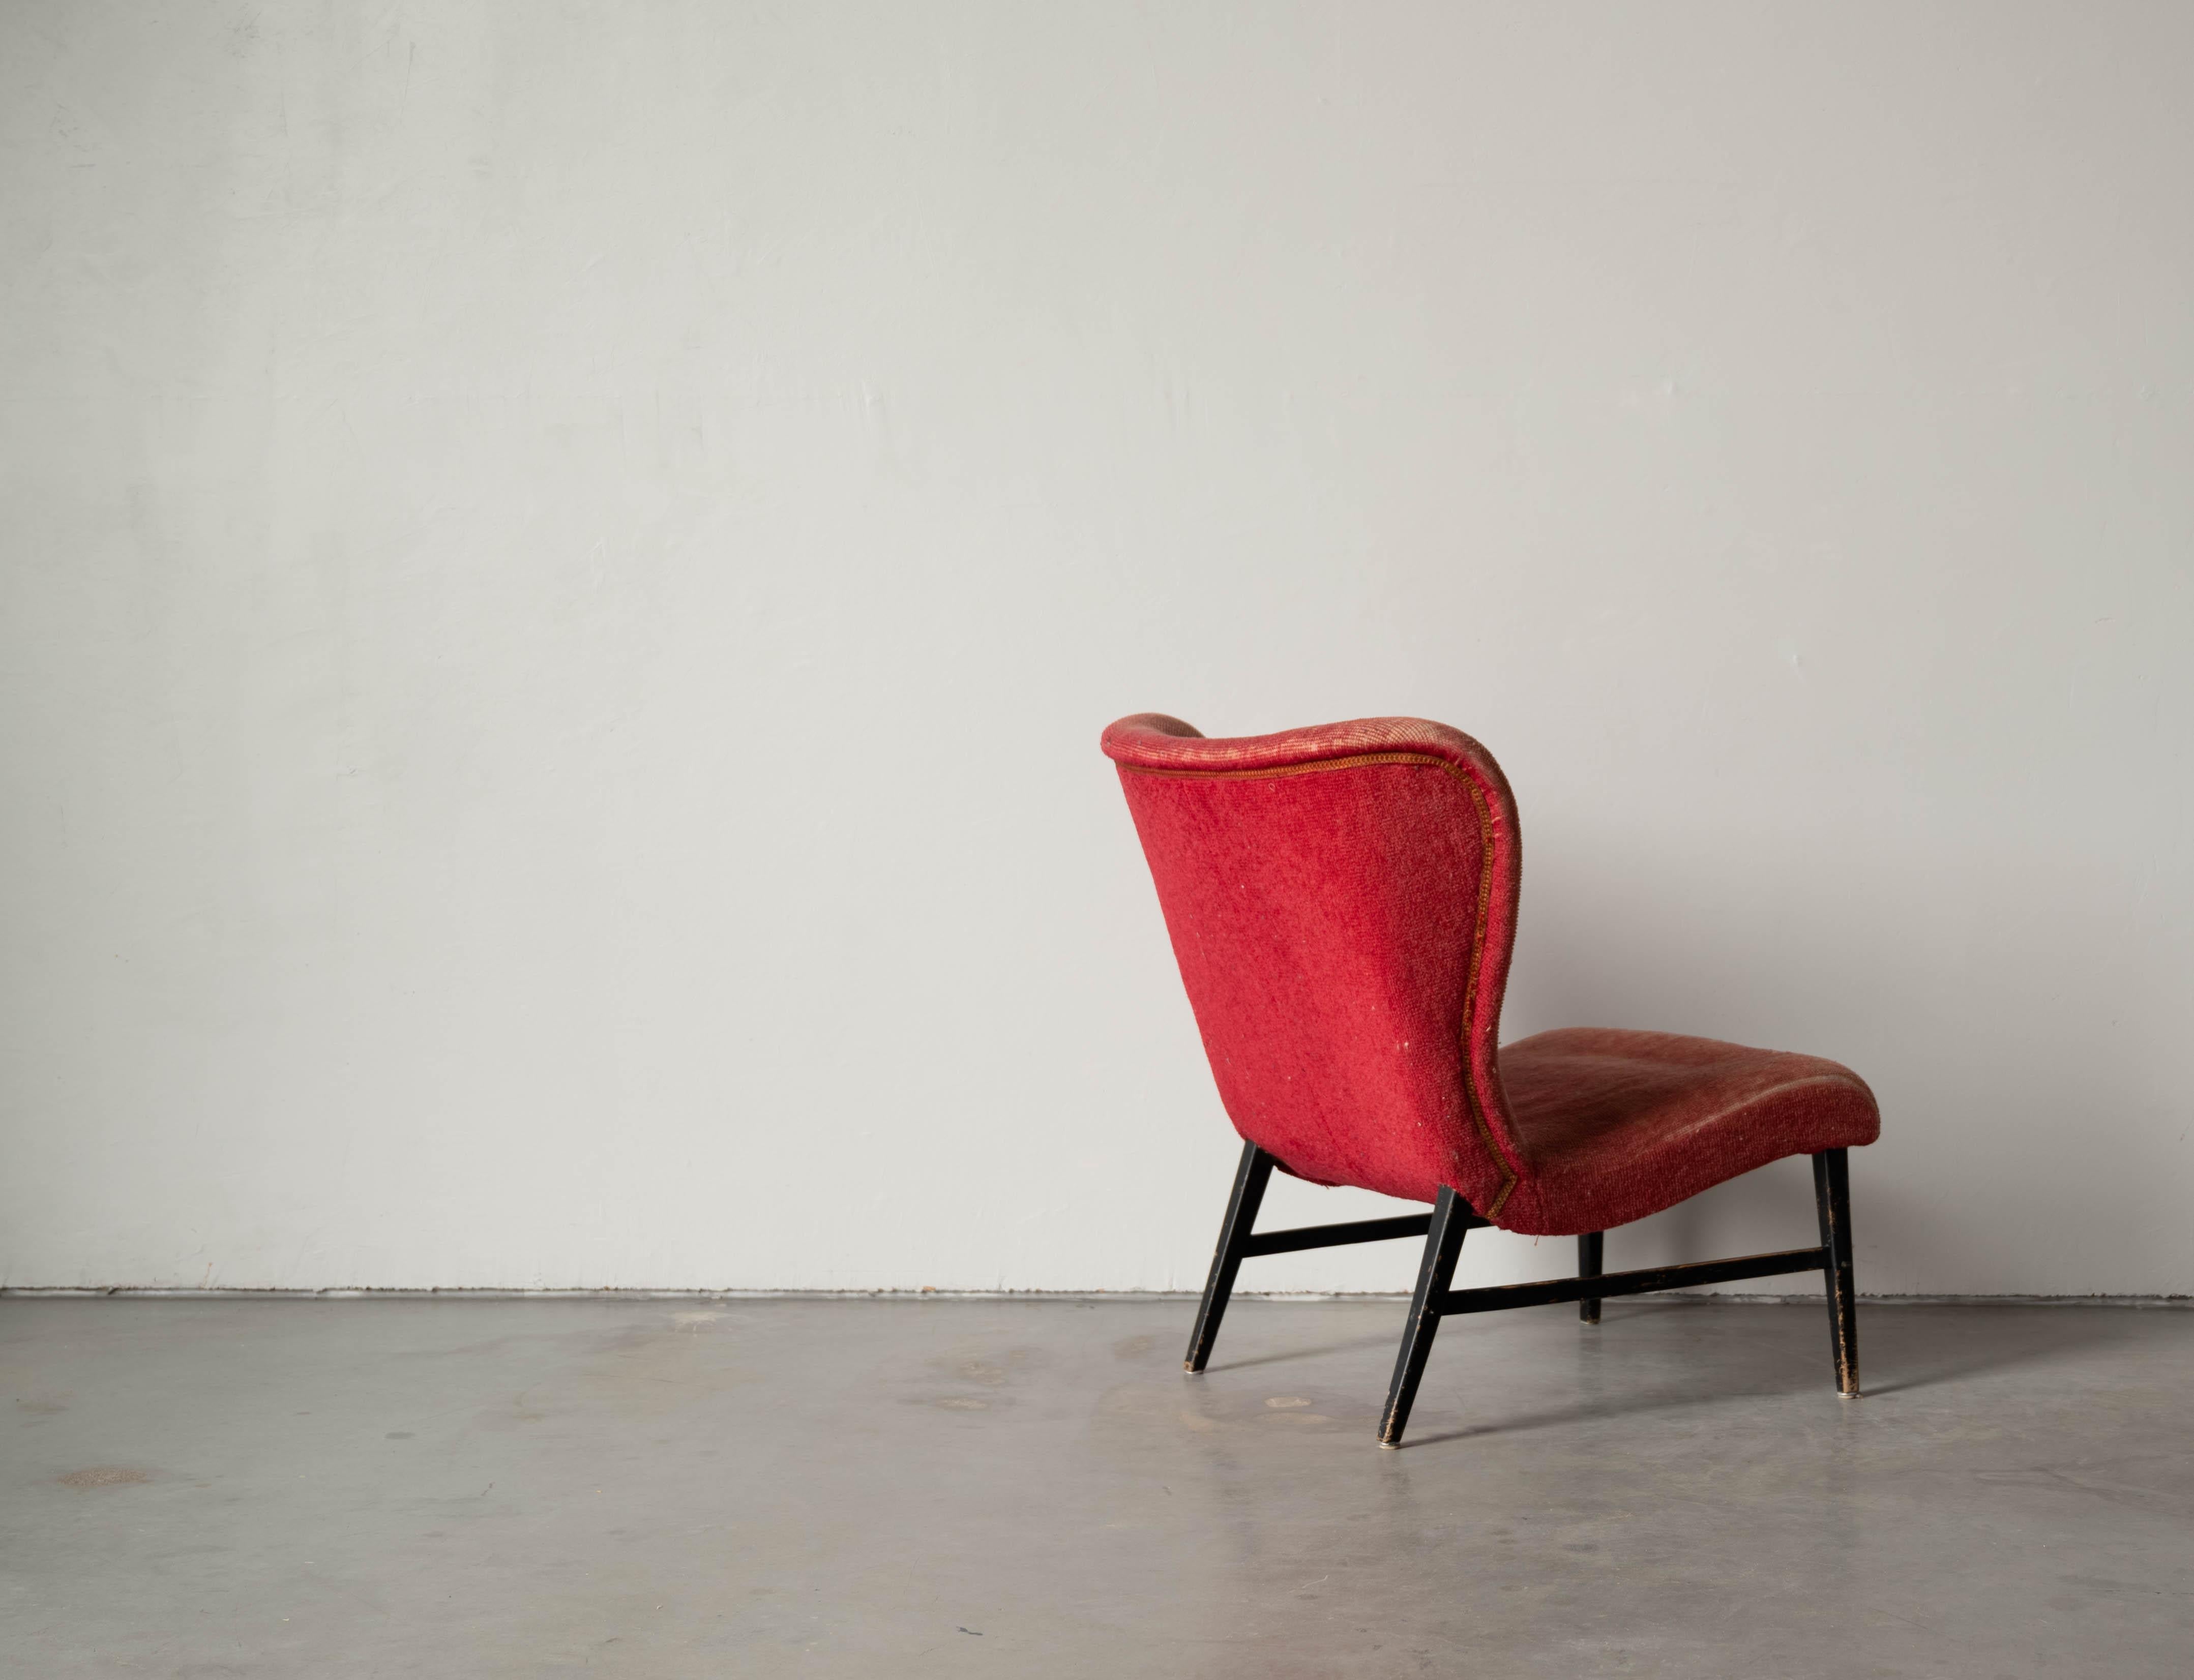 Erik Karlén 'Attributed' Slipper Chair, Red Velvet, Wood, Sweden, 1940s For Sale 1